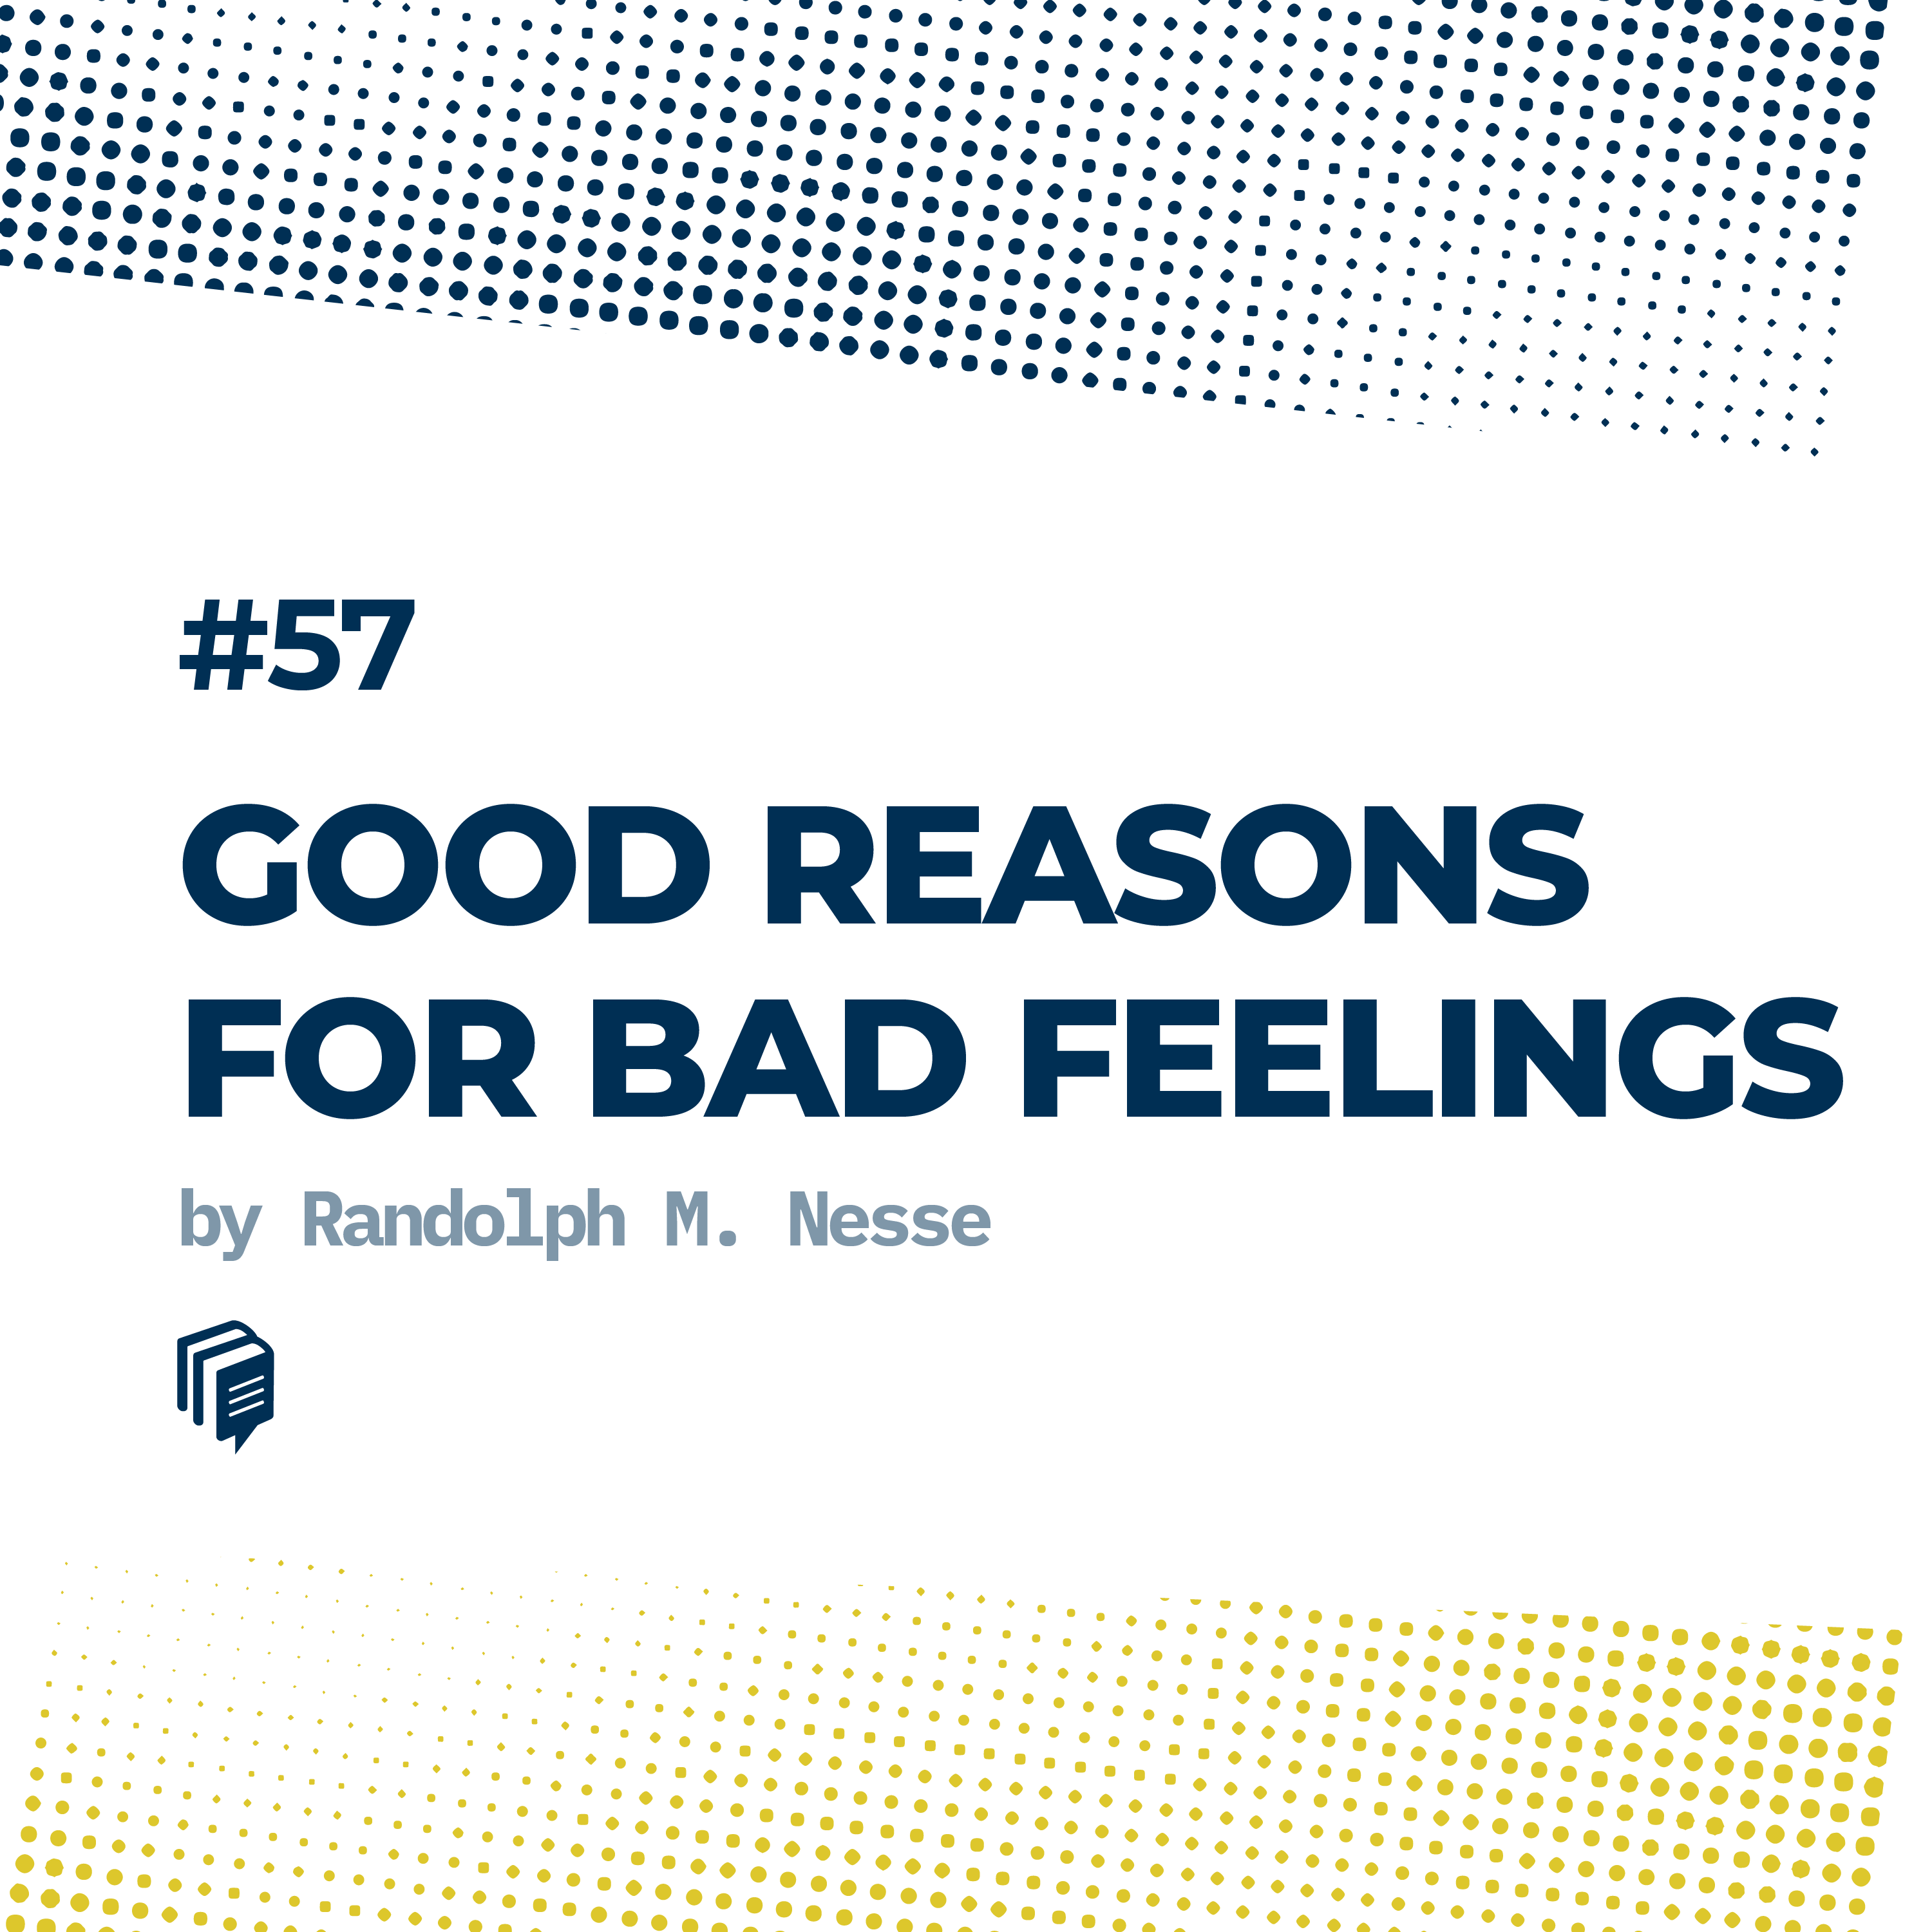 دلایل خوب برای احساس های بد